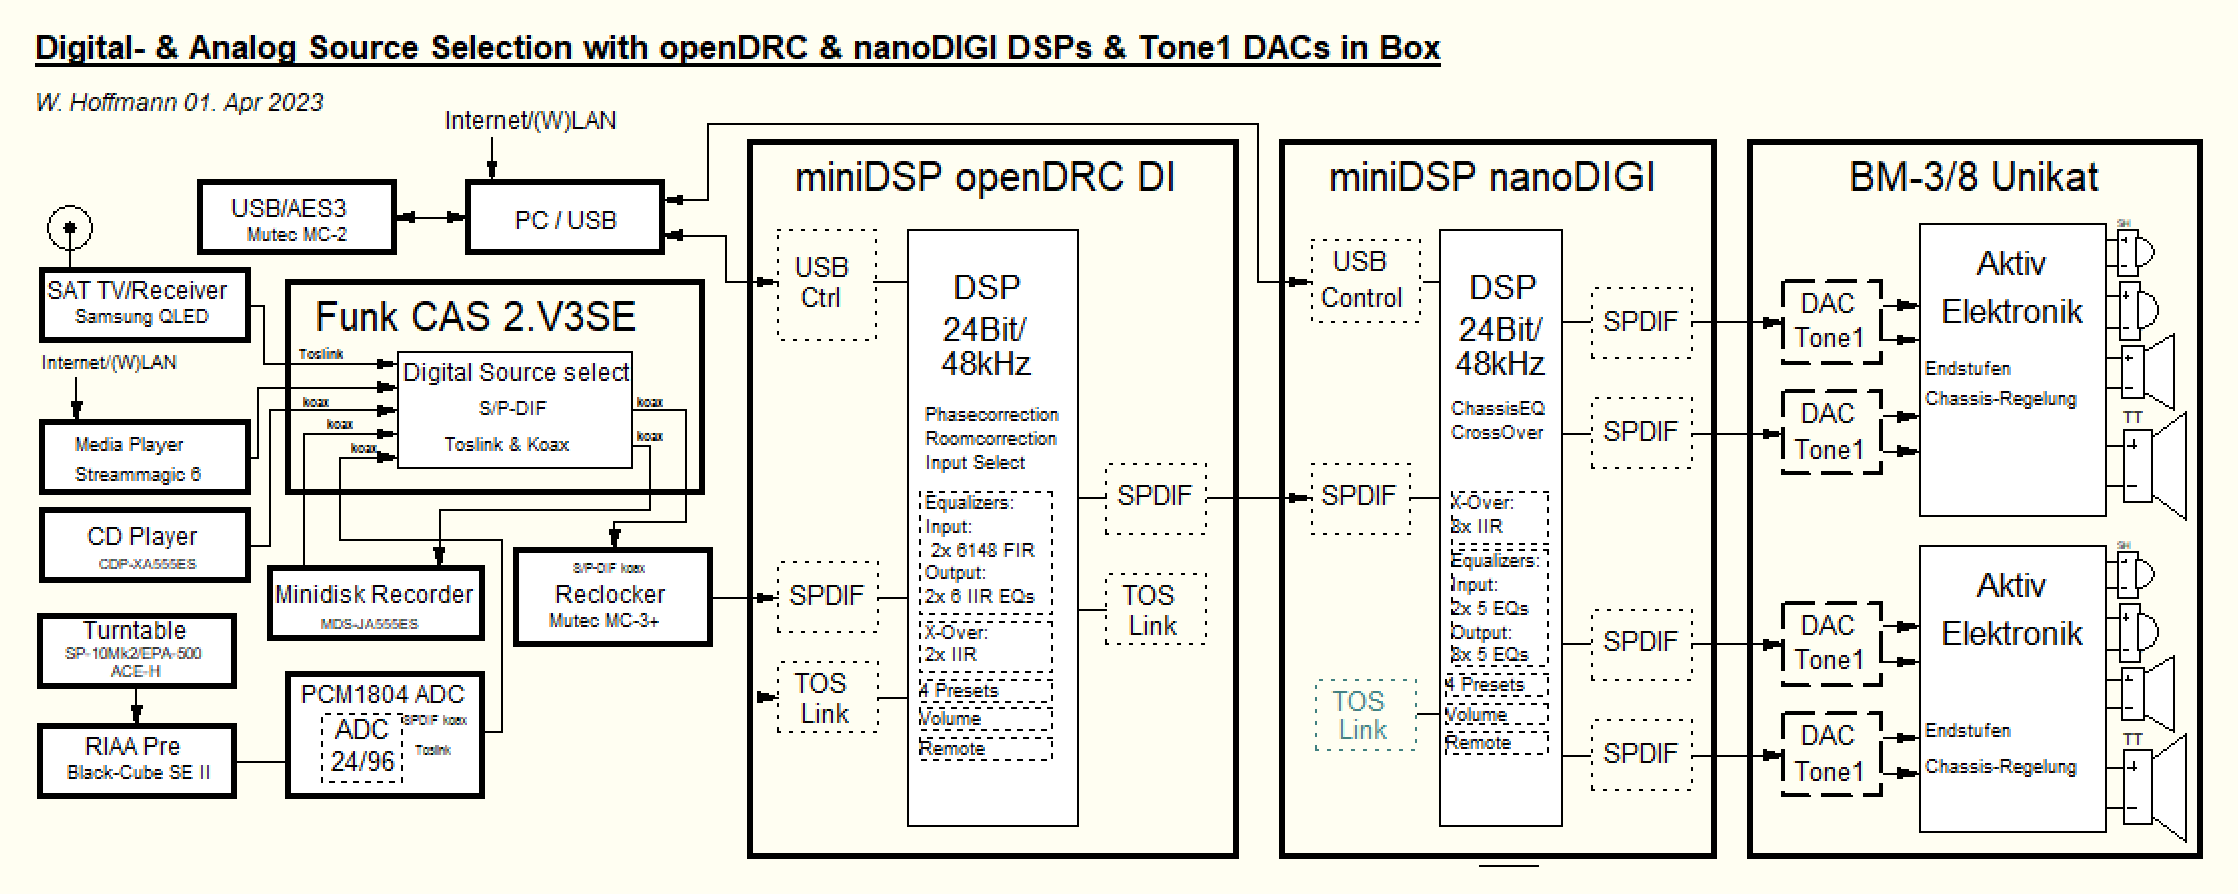 anlagenschaltung mit open DRC + nanoDIGI + ADC extern.png